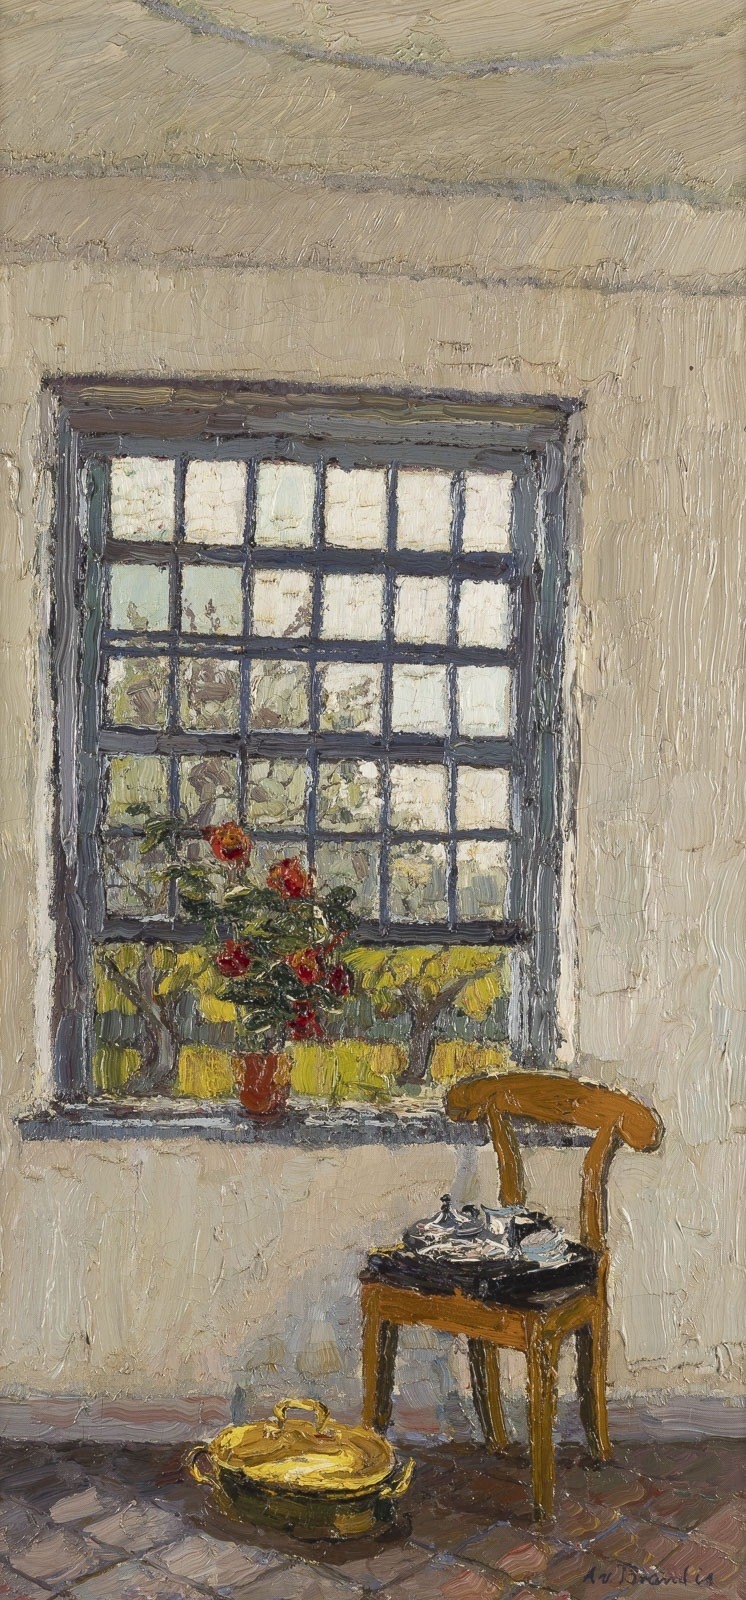 INTERIOR WITH WINDOW - August von Brandis